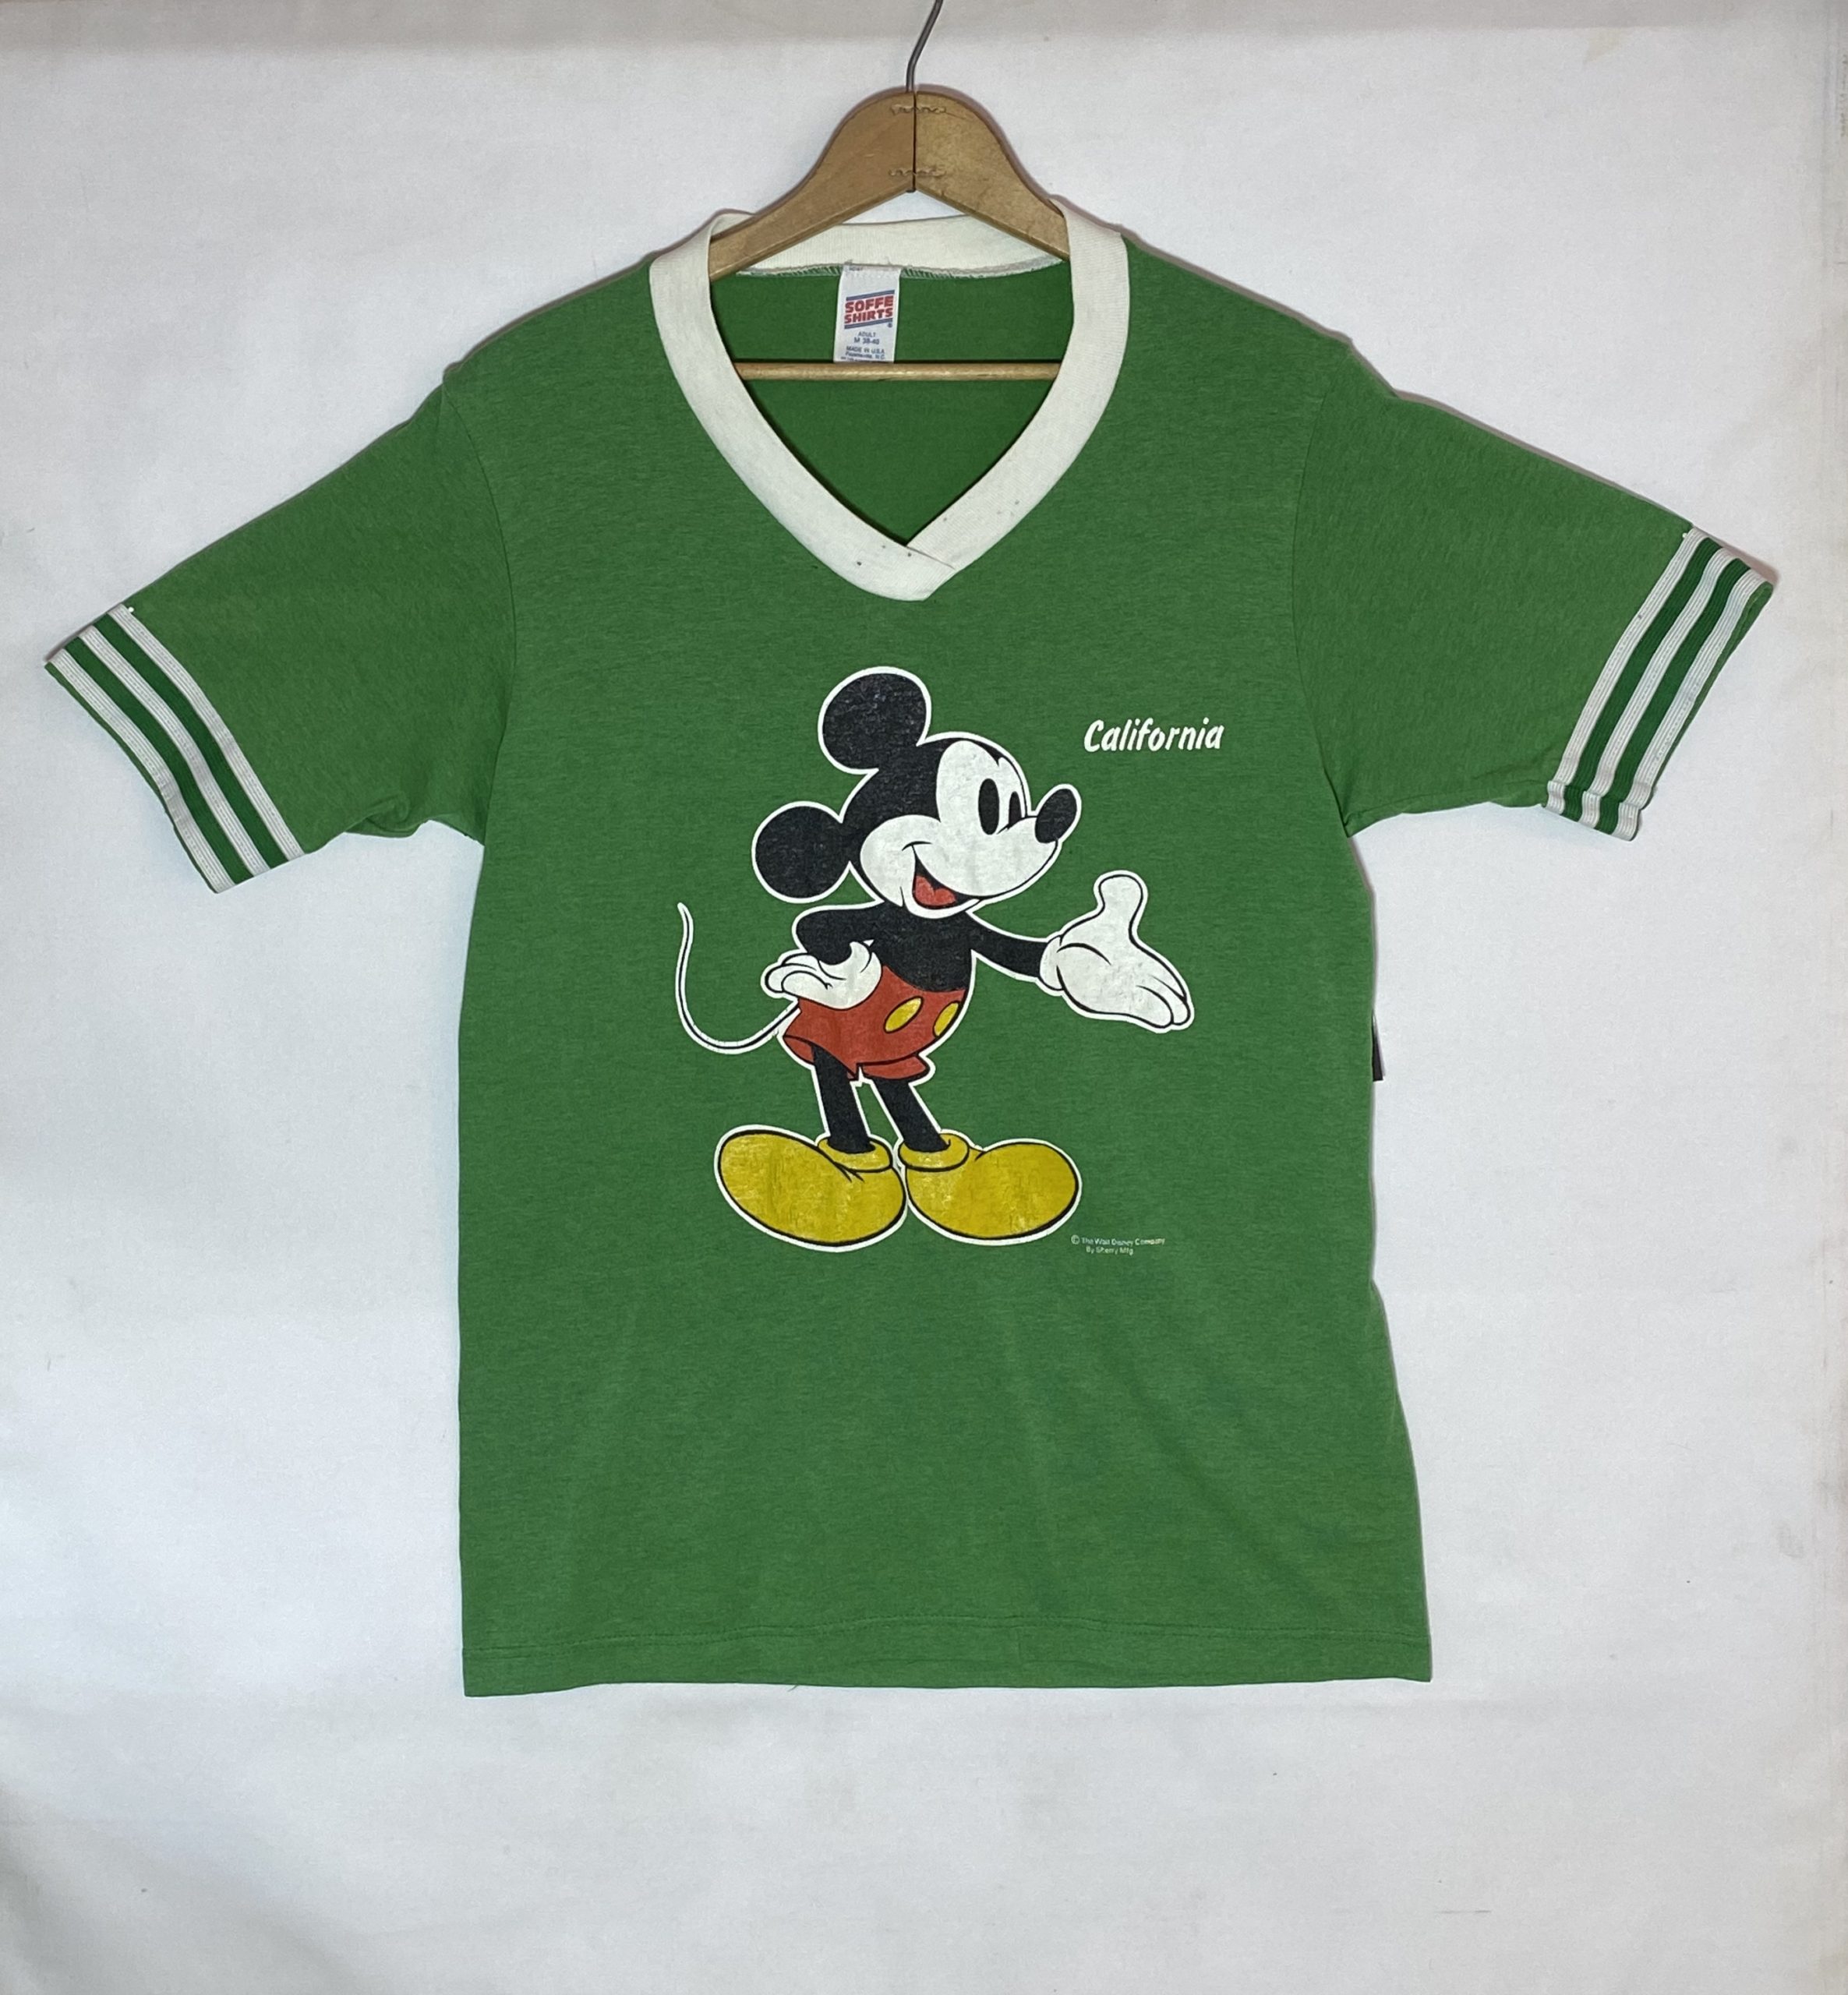 ビンテージ Tシャツ カリフォルニア Mickey Mouse(ミッキーマウス) 70's Vネック ラインリブ プリントTee 緑 グリーン |  ヴィンテージショップ・アメリカンウェーブ Vintage Shop American Wave